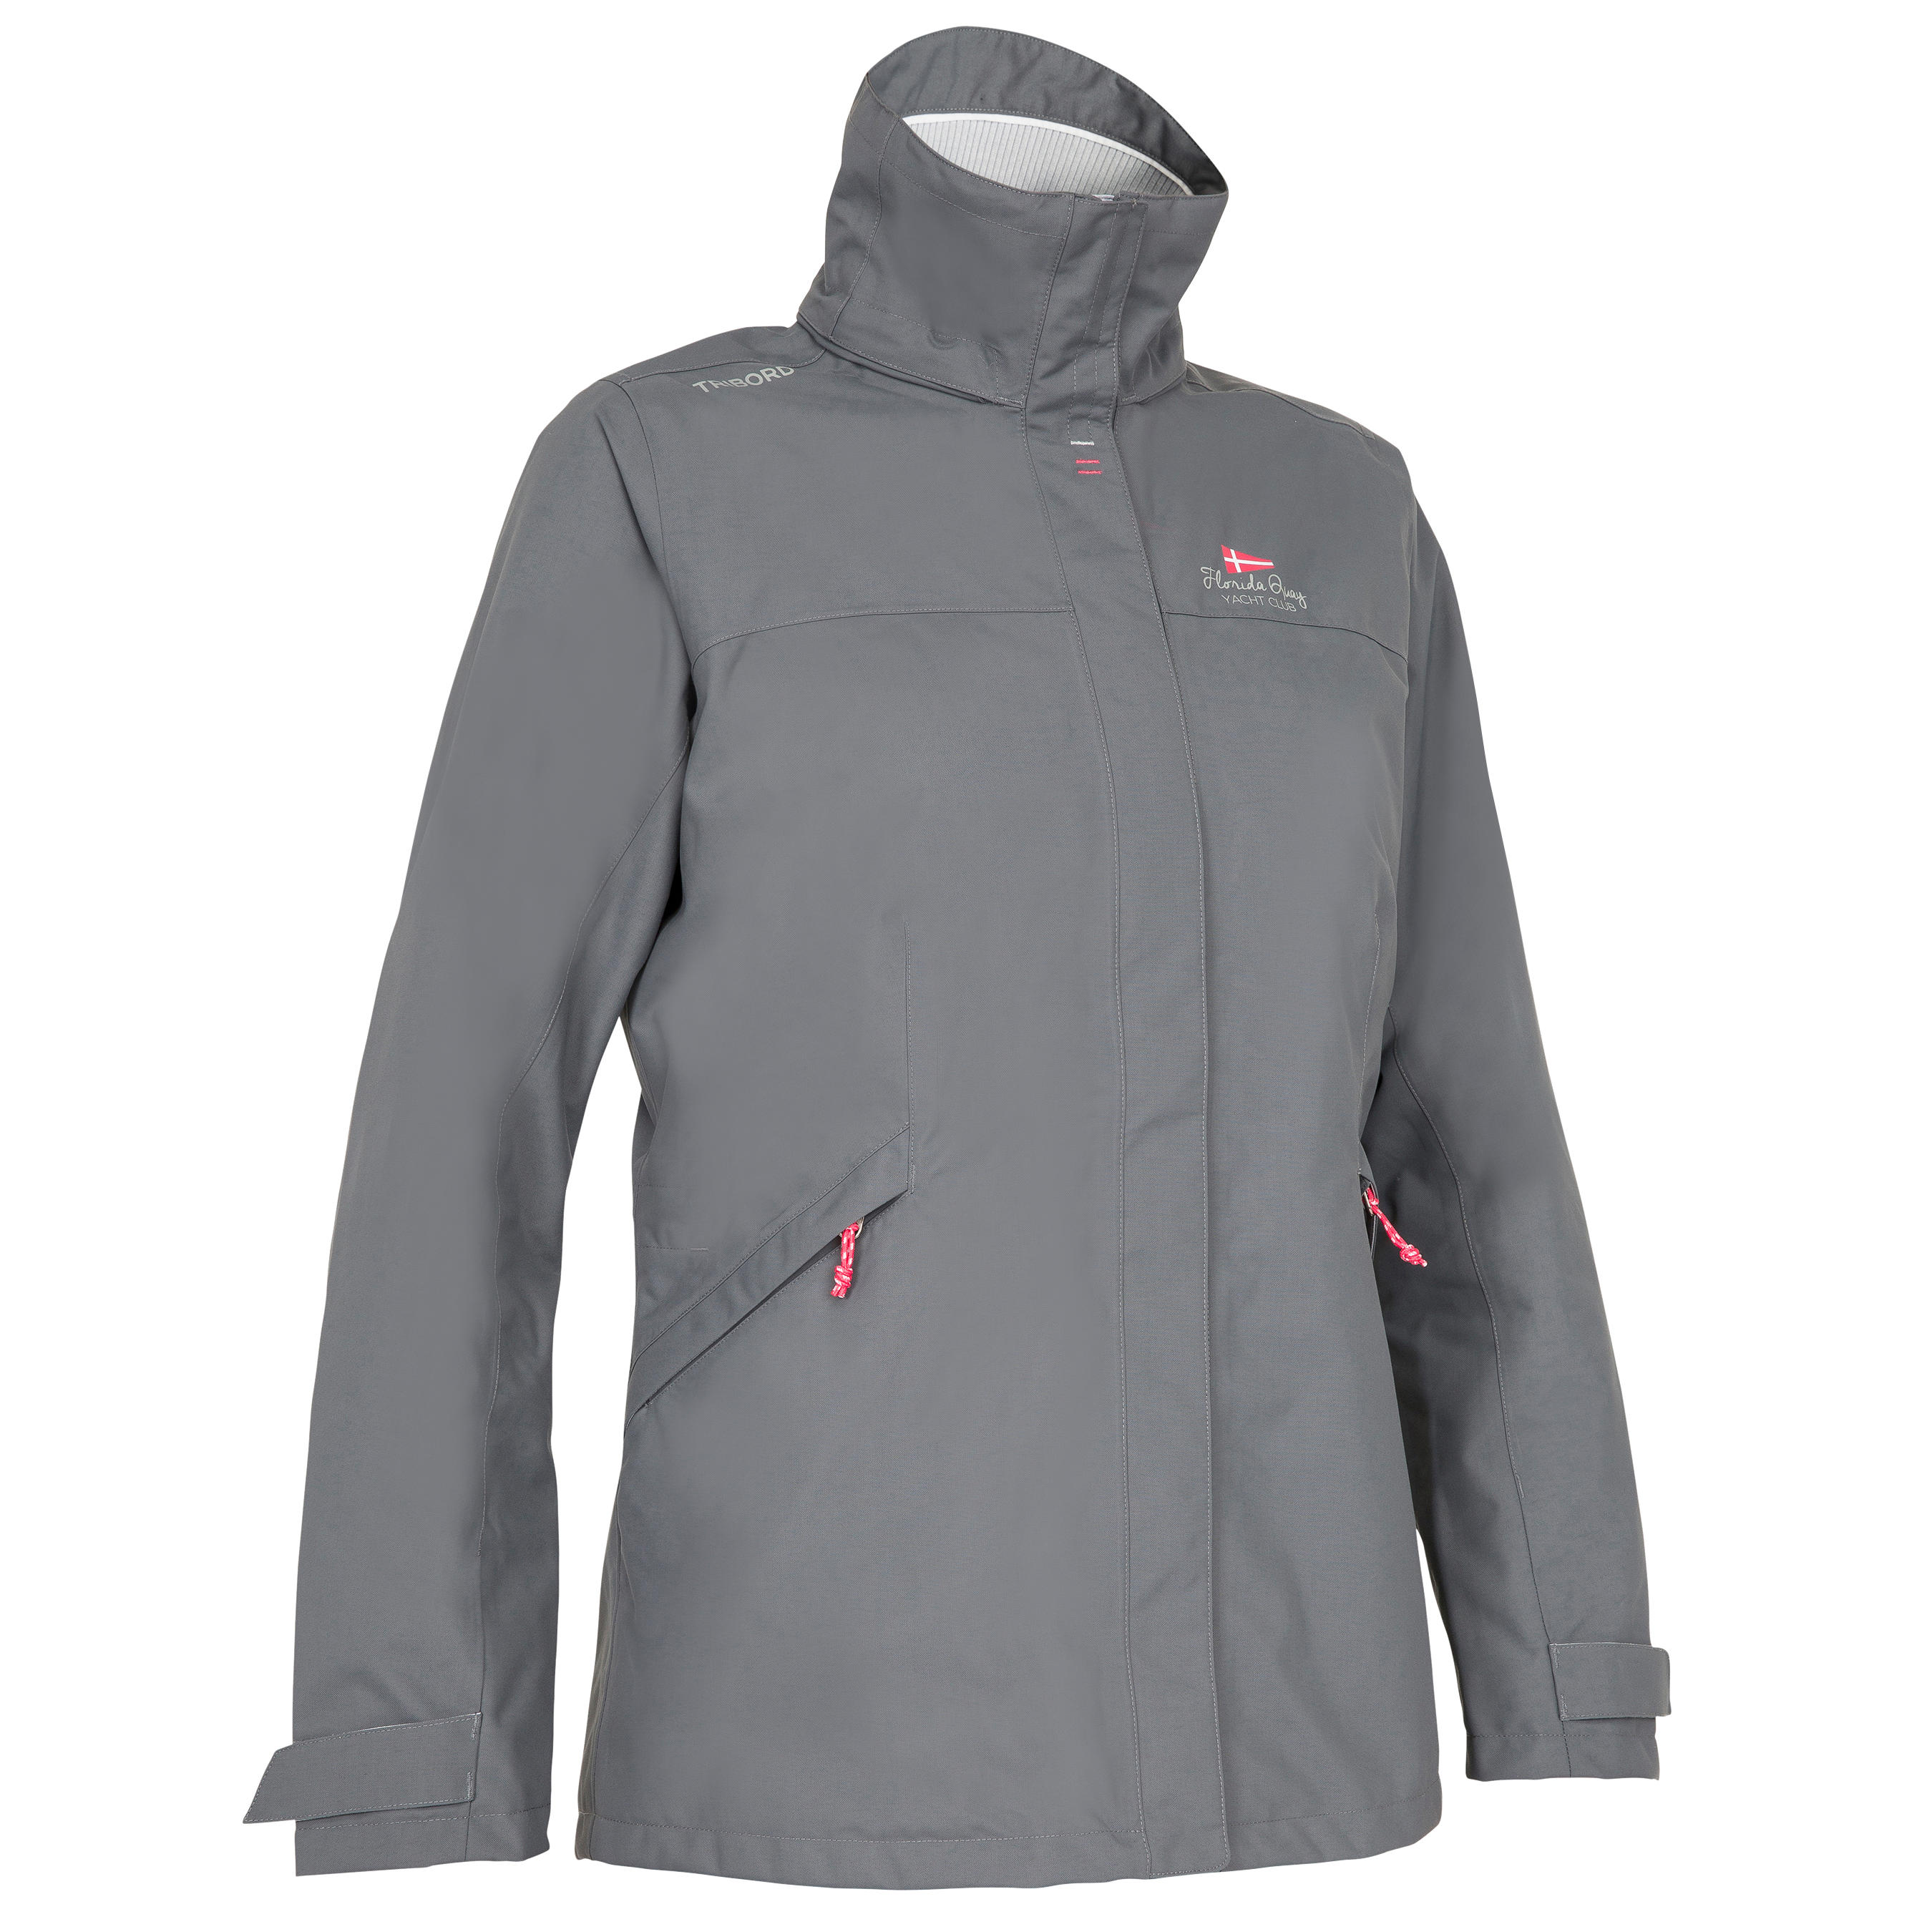 Coastal 100 women's waterproof, windproof, breathable jacket - grey 2/22